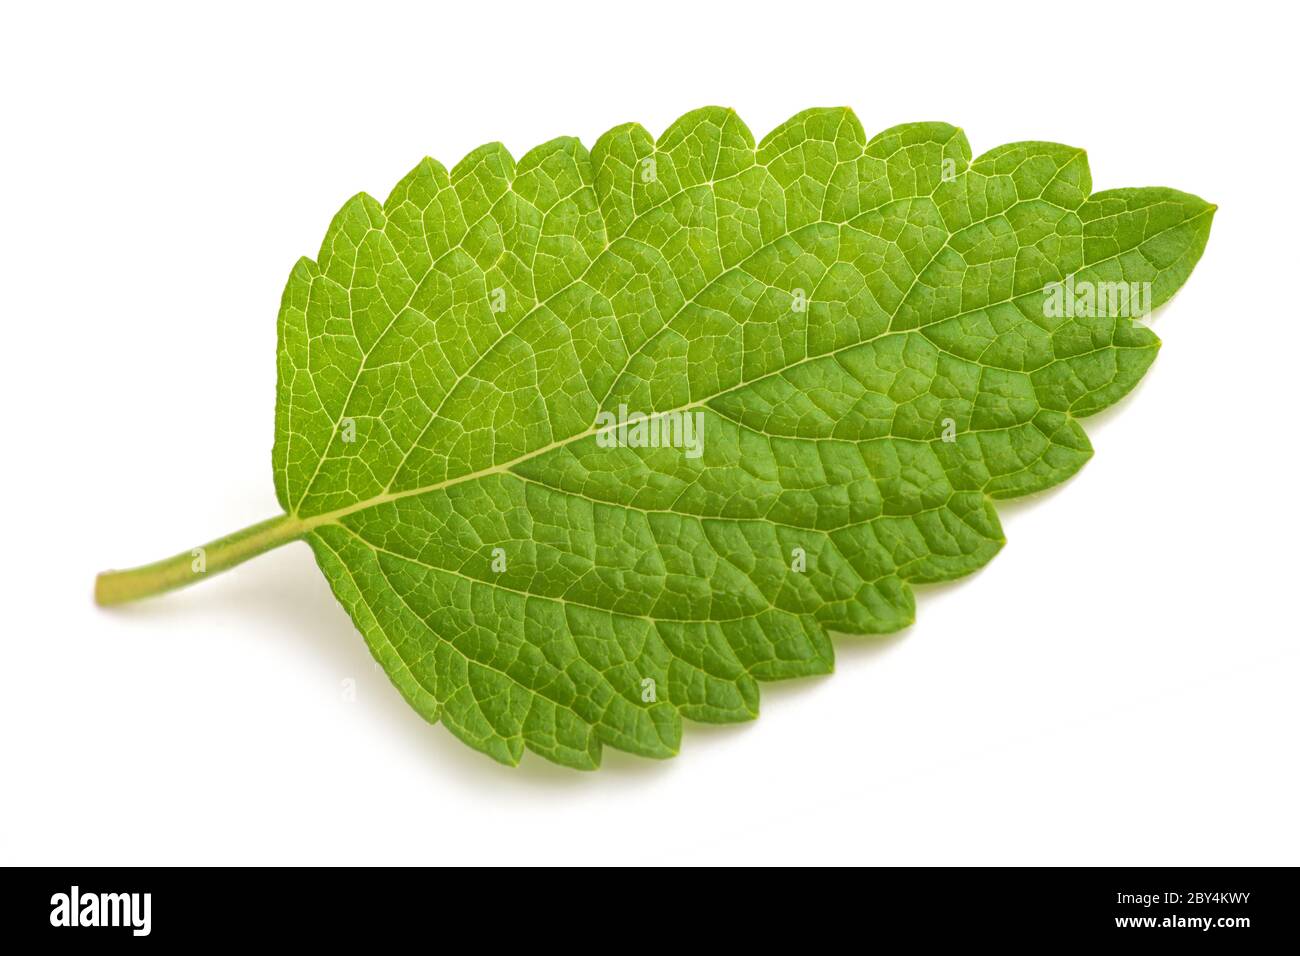 lemon balm  leaf isolated on white background Stock Photo